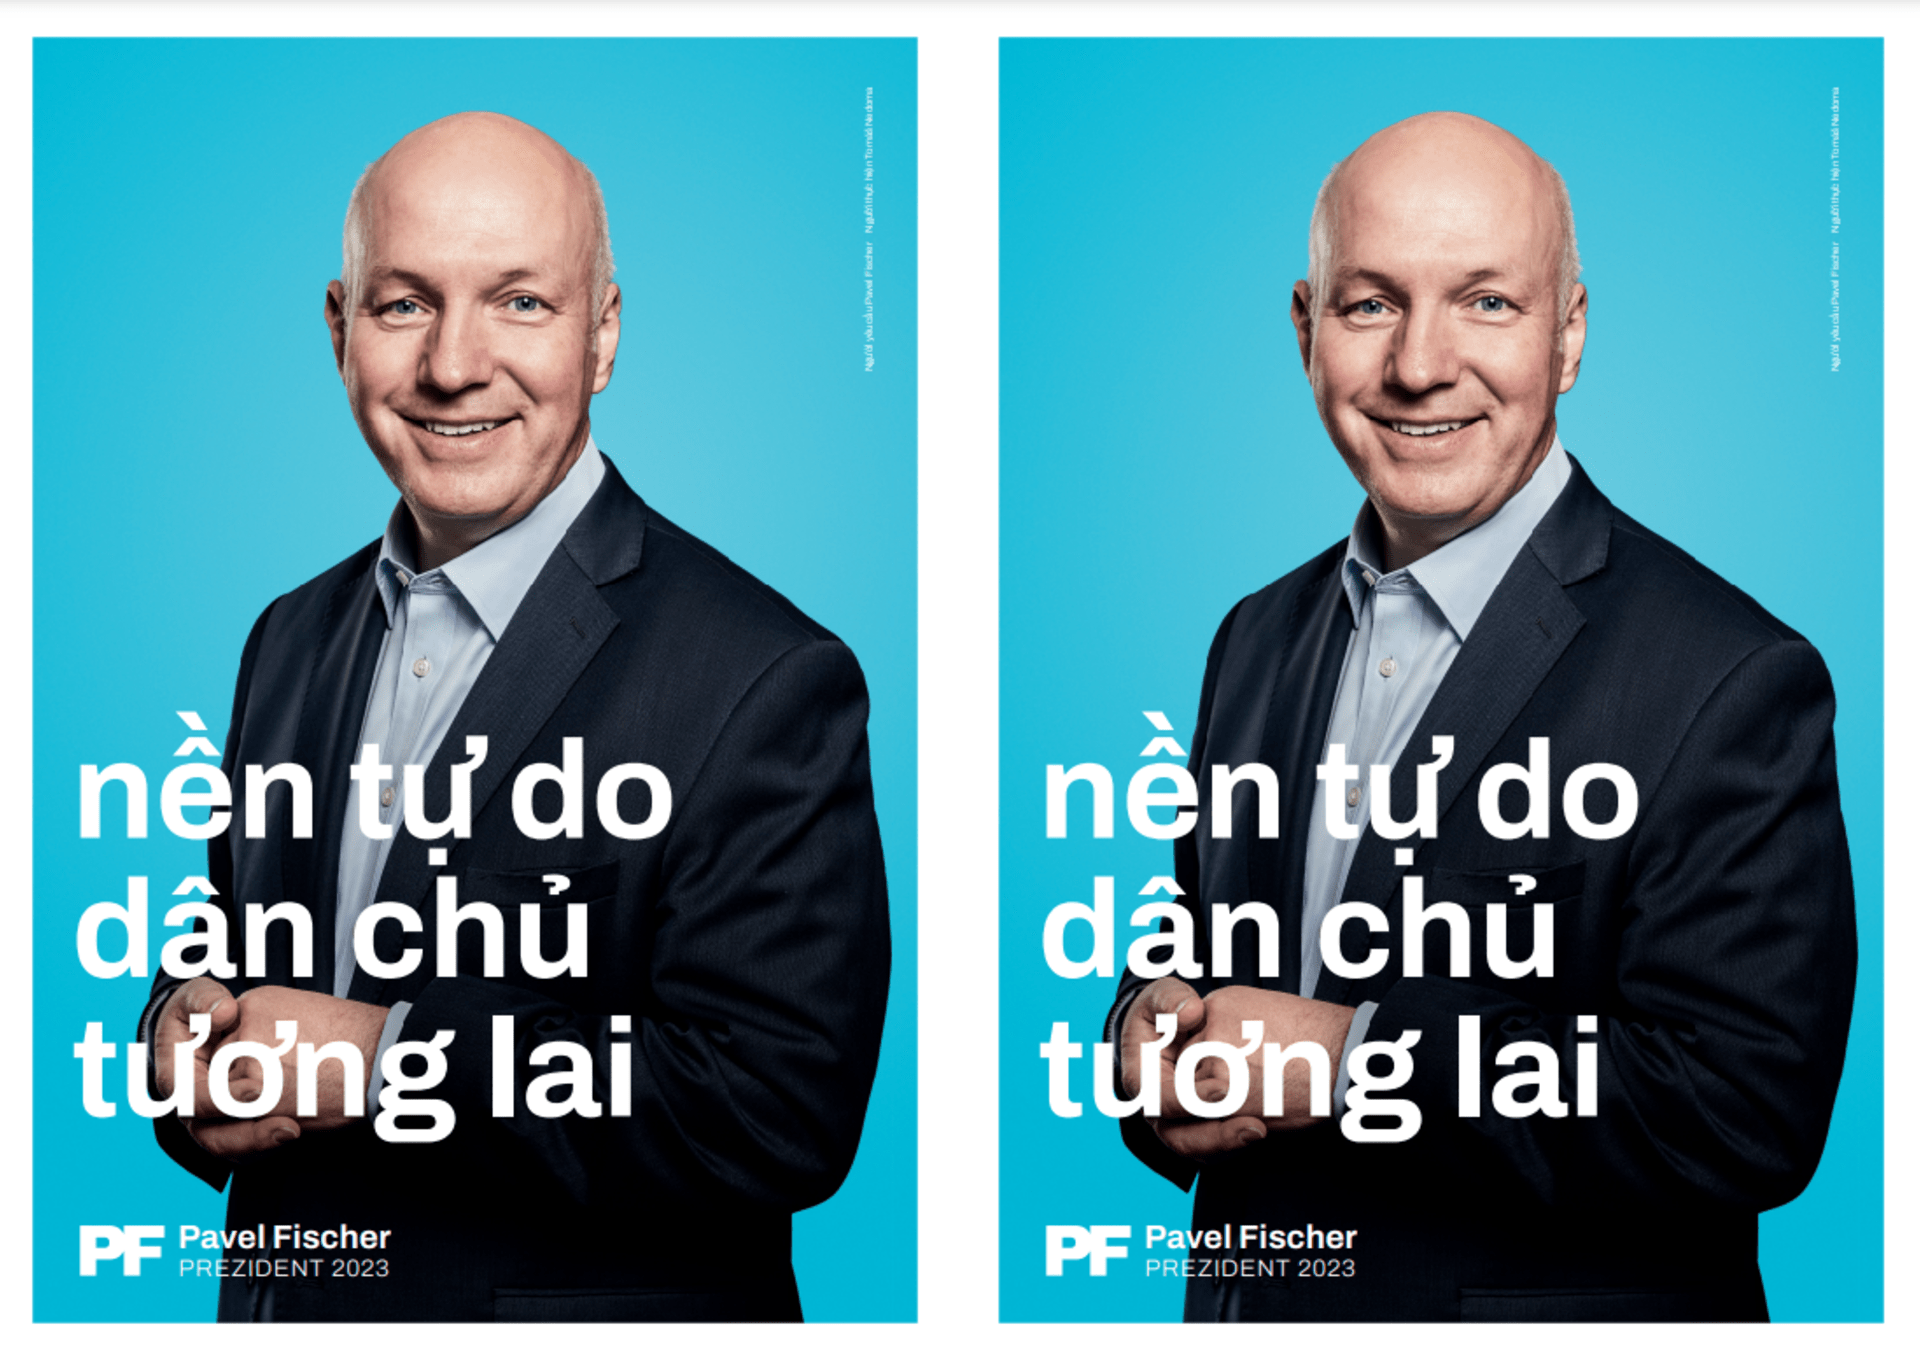 Pavel Fischer má na svých stránkách i letáčky ve vietnamštině.